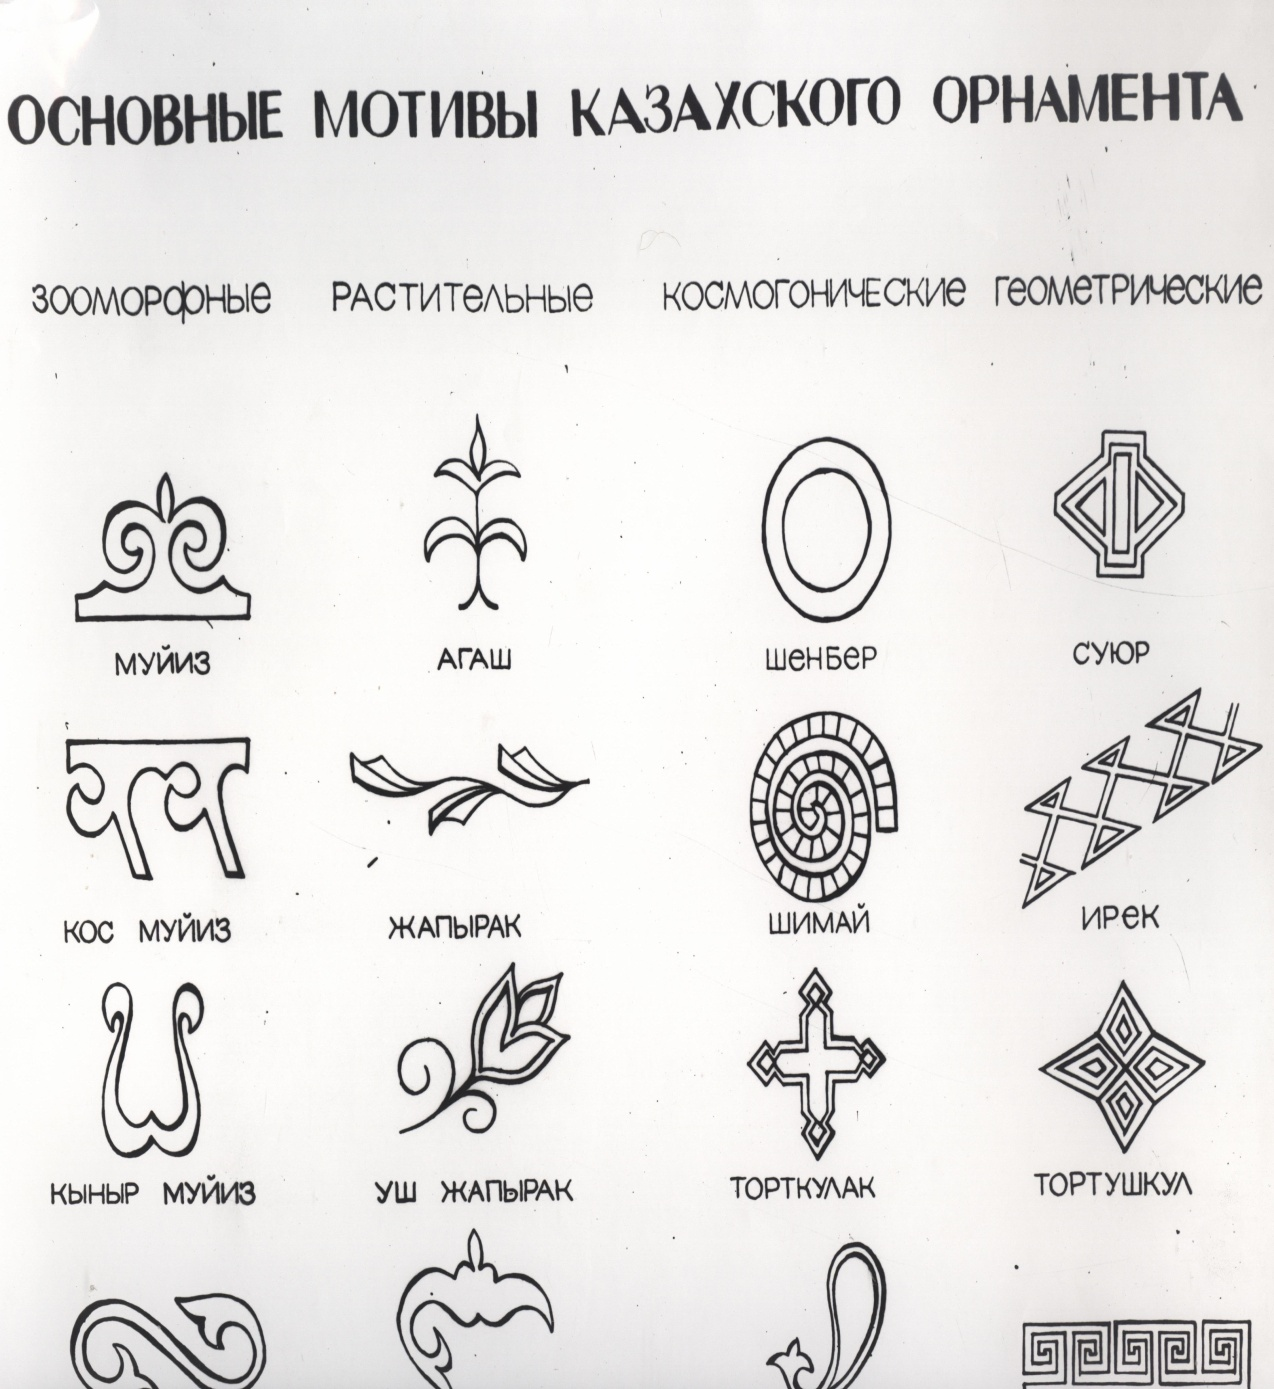 Древнетюркские символы в казахской орнаментике